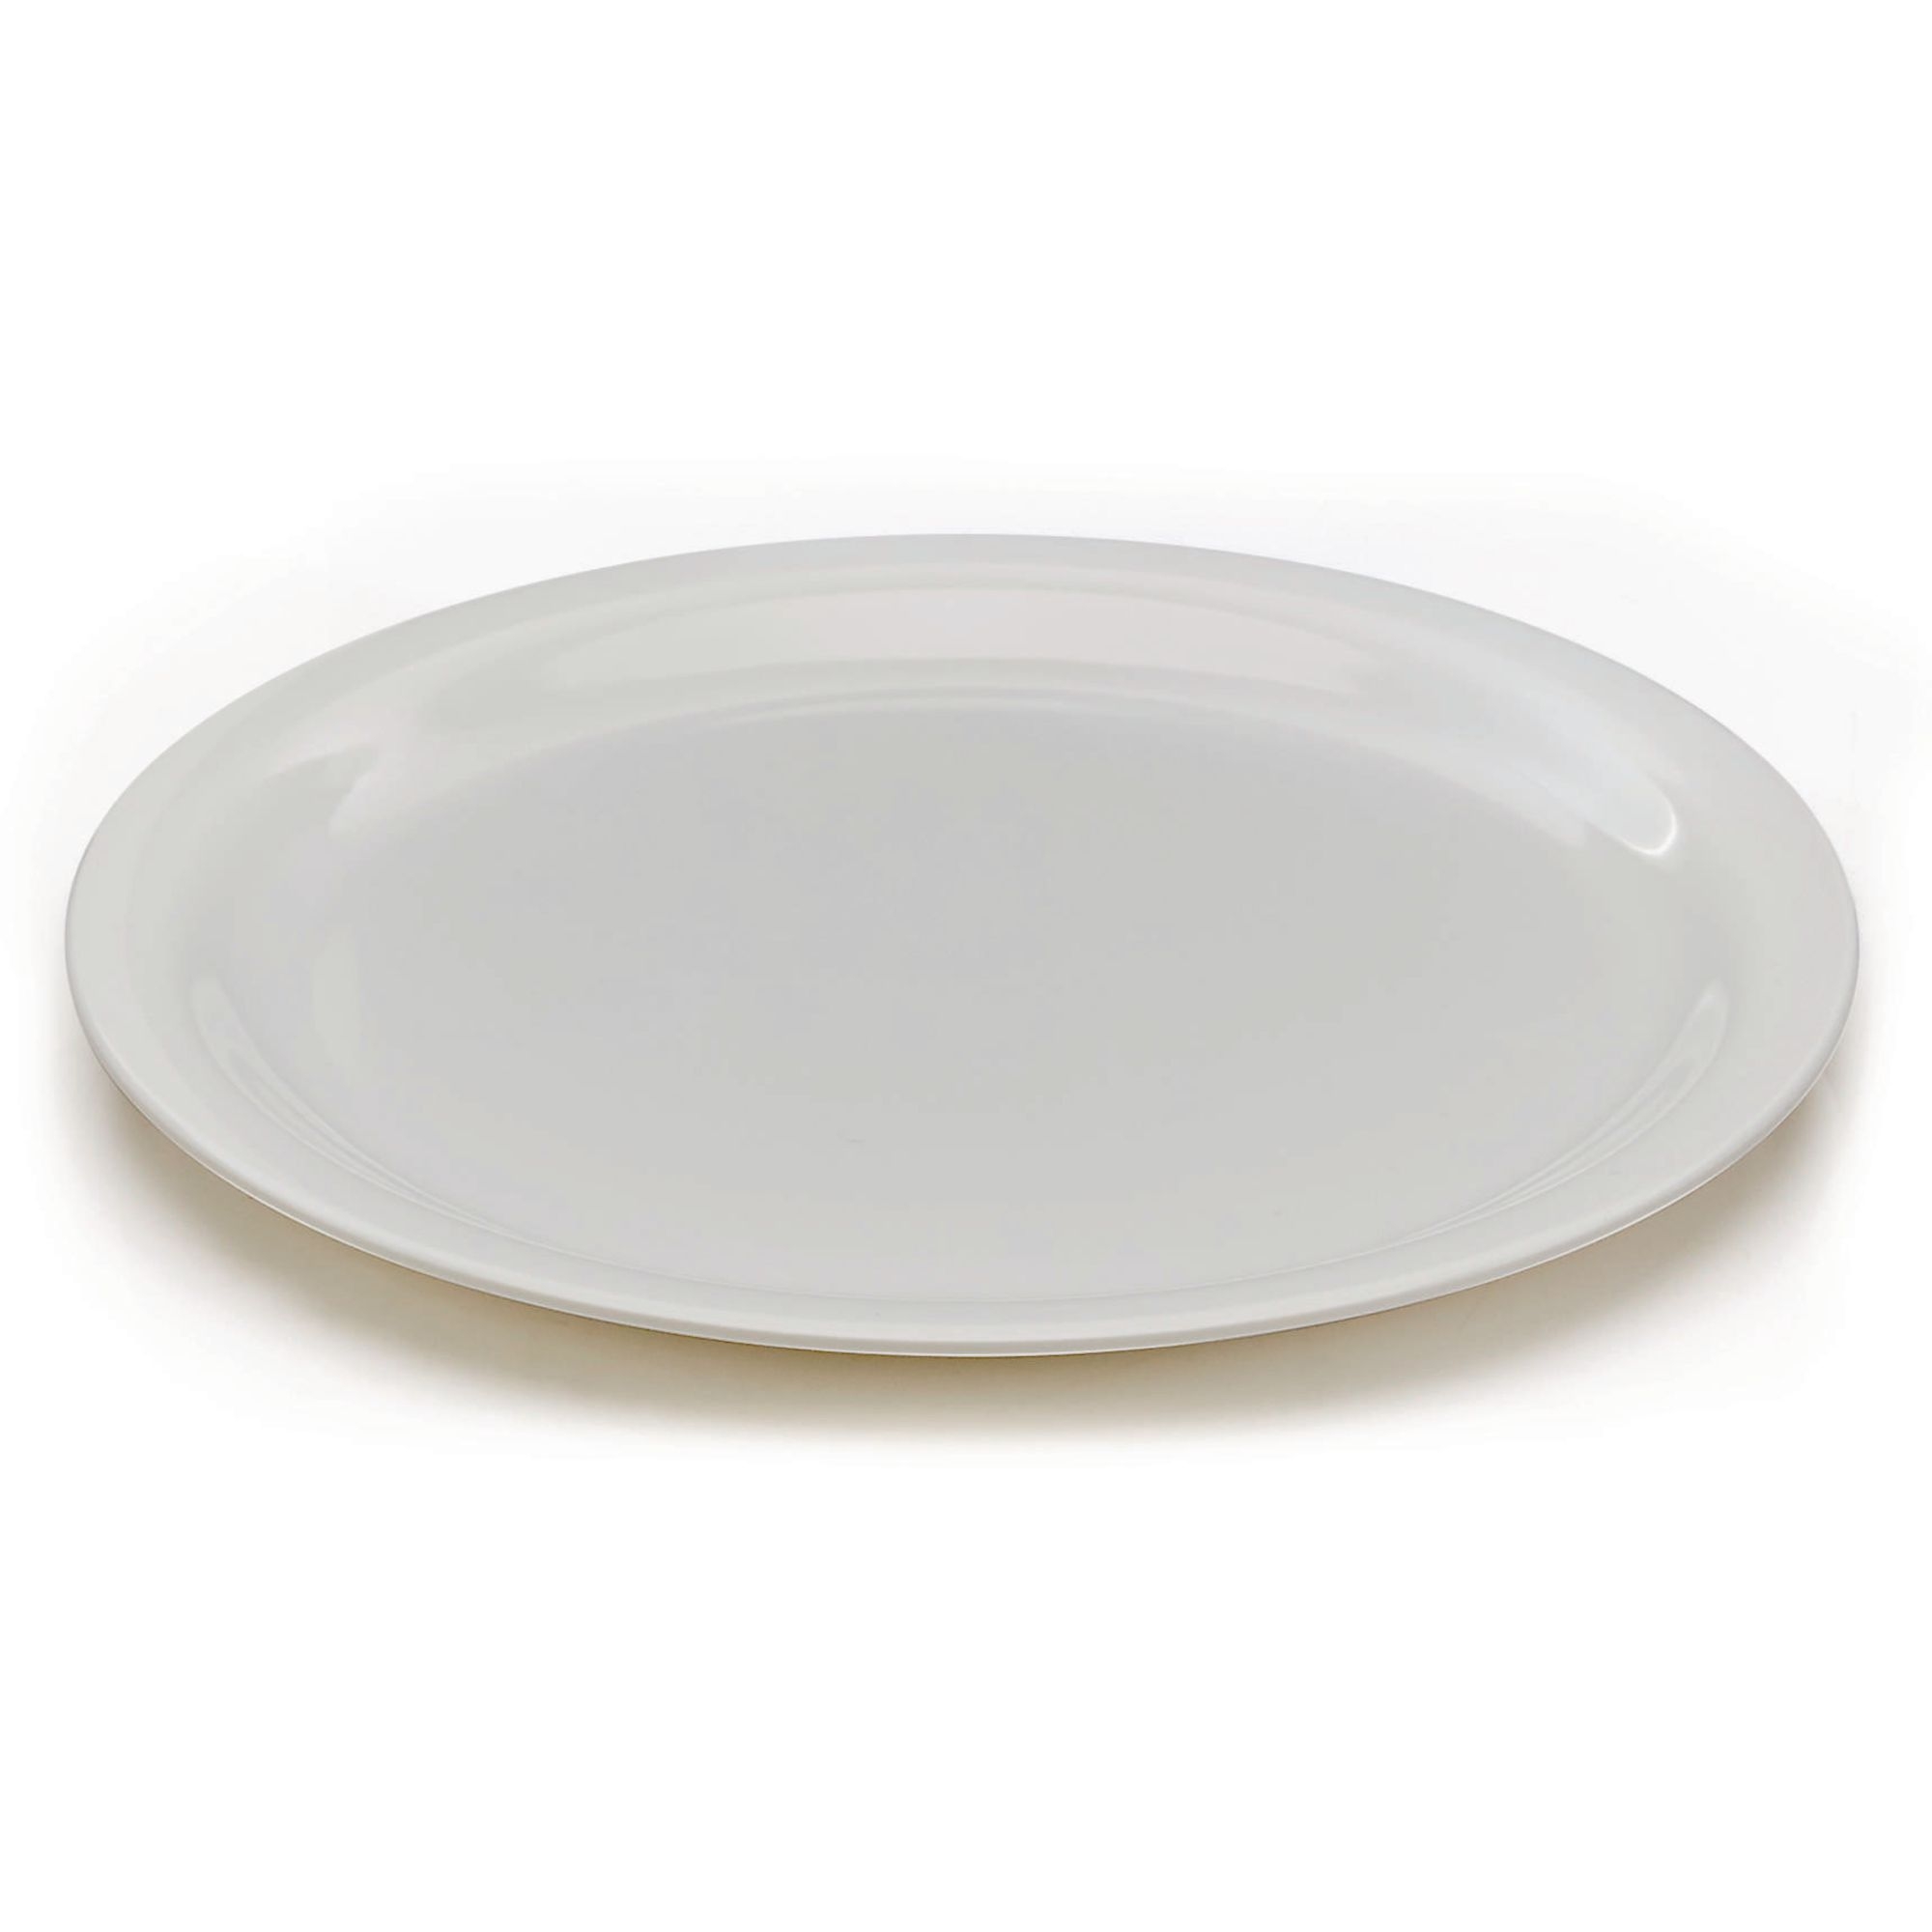 White Melamine Tableware - 230mm Plates